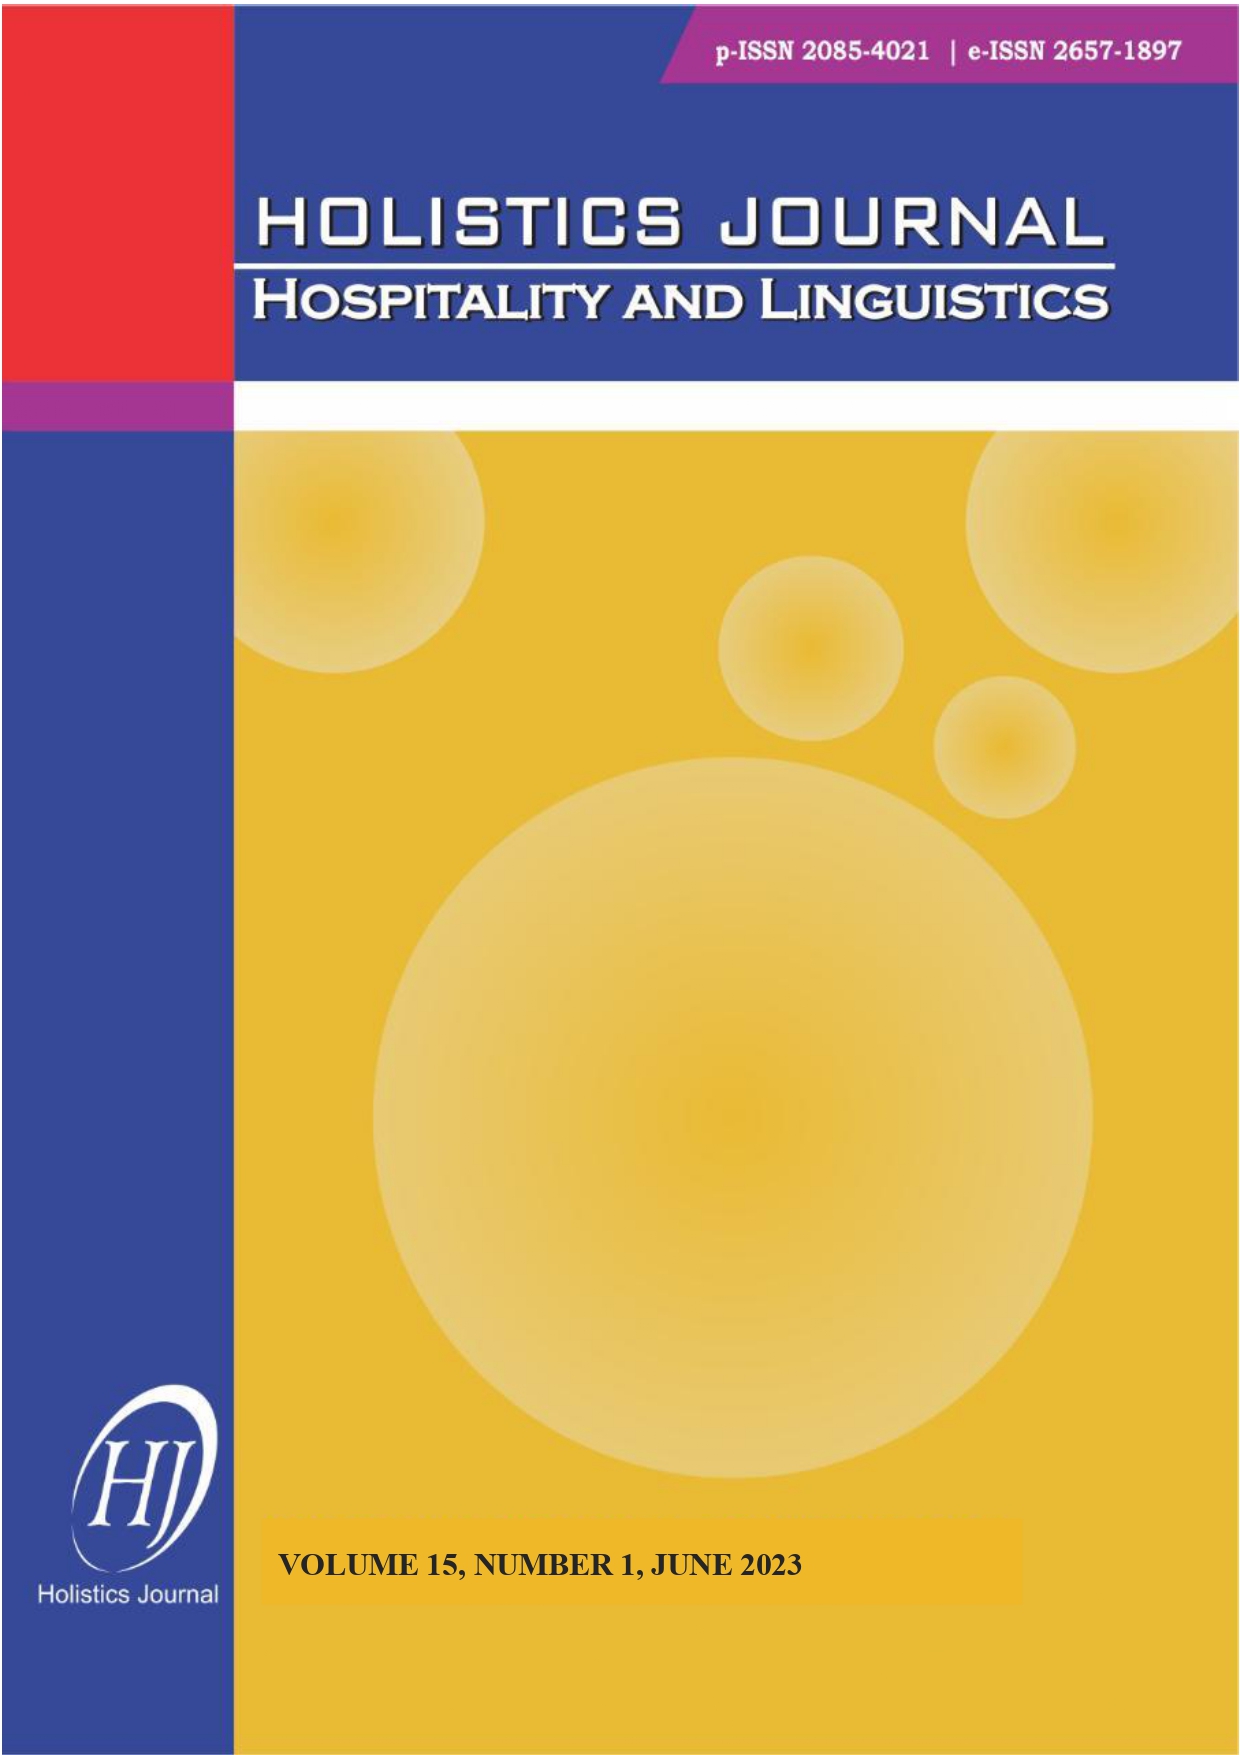 					View Vol. 15 No. 1 (2023): HOLISTICS JOURNAL: HOSPITALITY AND LINGUISTICS
				